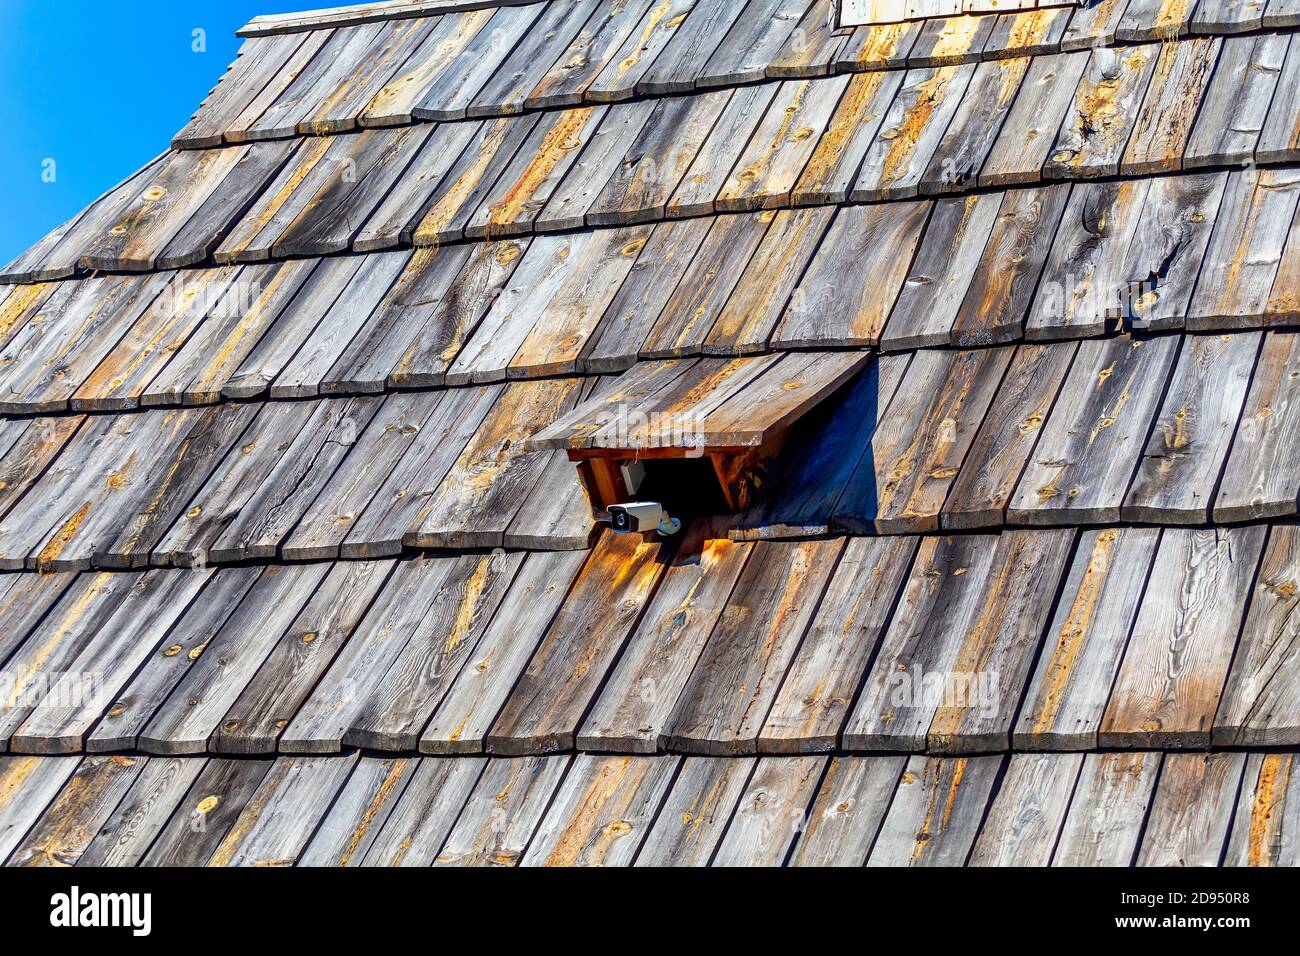 Sicherheit auf dem Land Ort Hintergrund. CCTV-Überwachungskamera auf der alten Holzdachziegel befestigt. Stockfoto